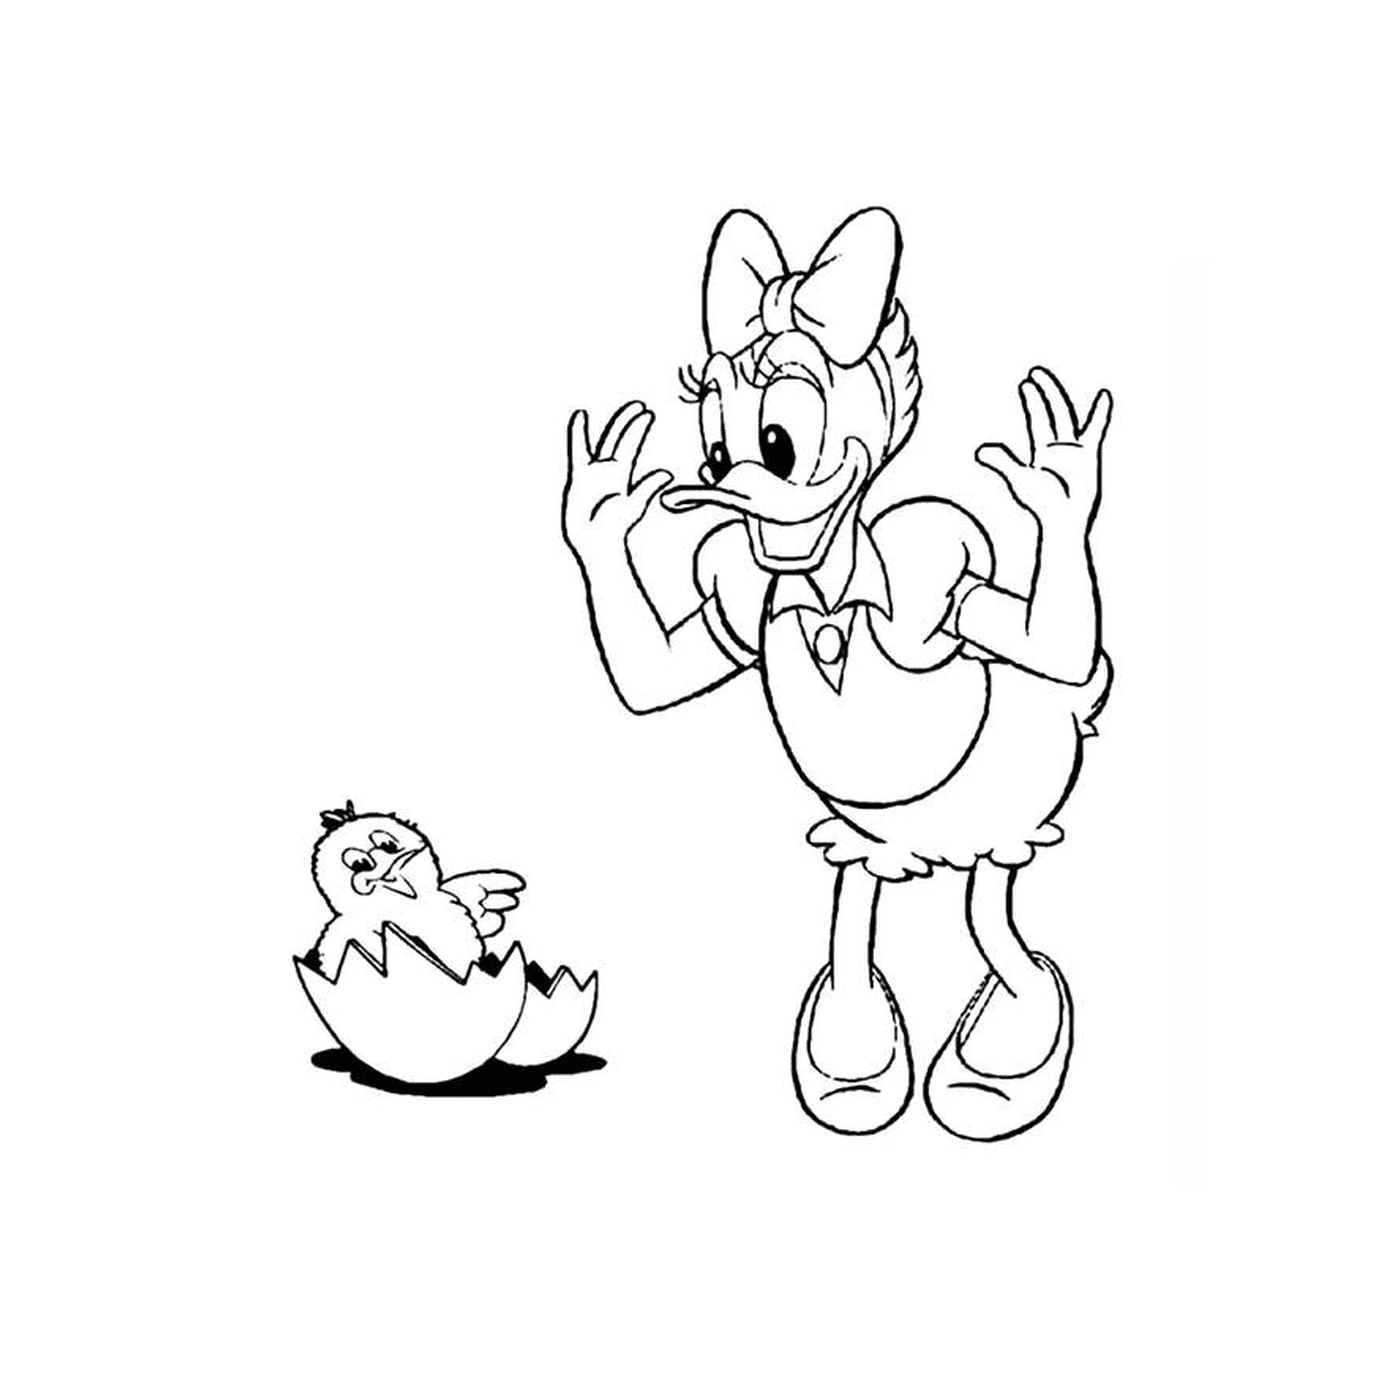  Un personaje de dibujos animados y un huevo 